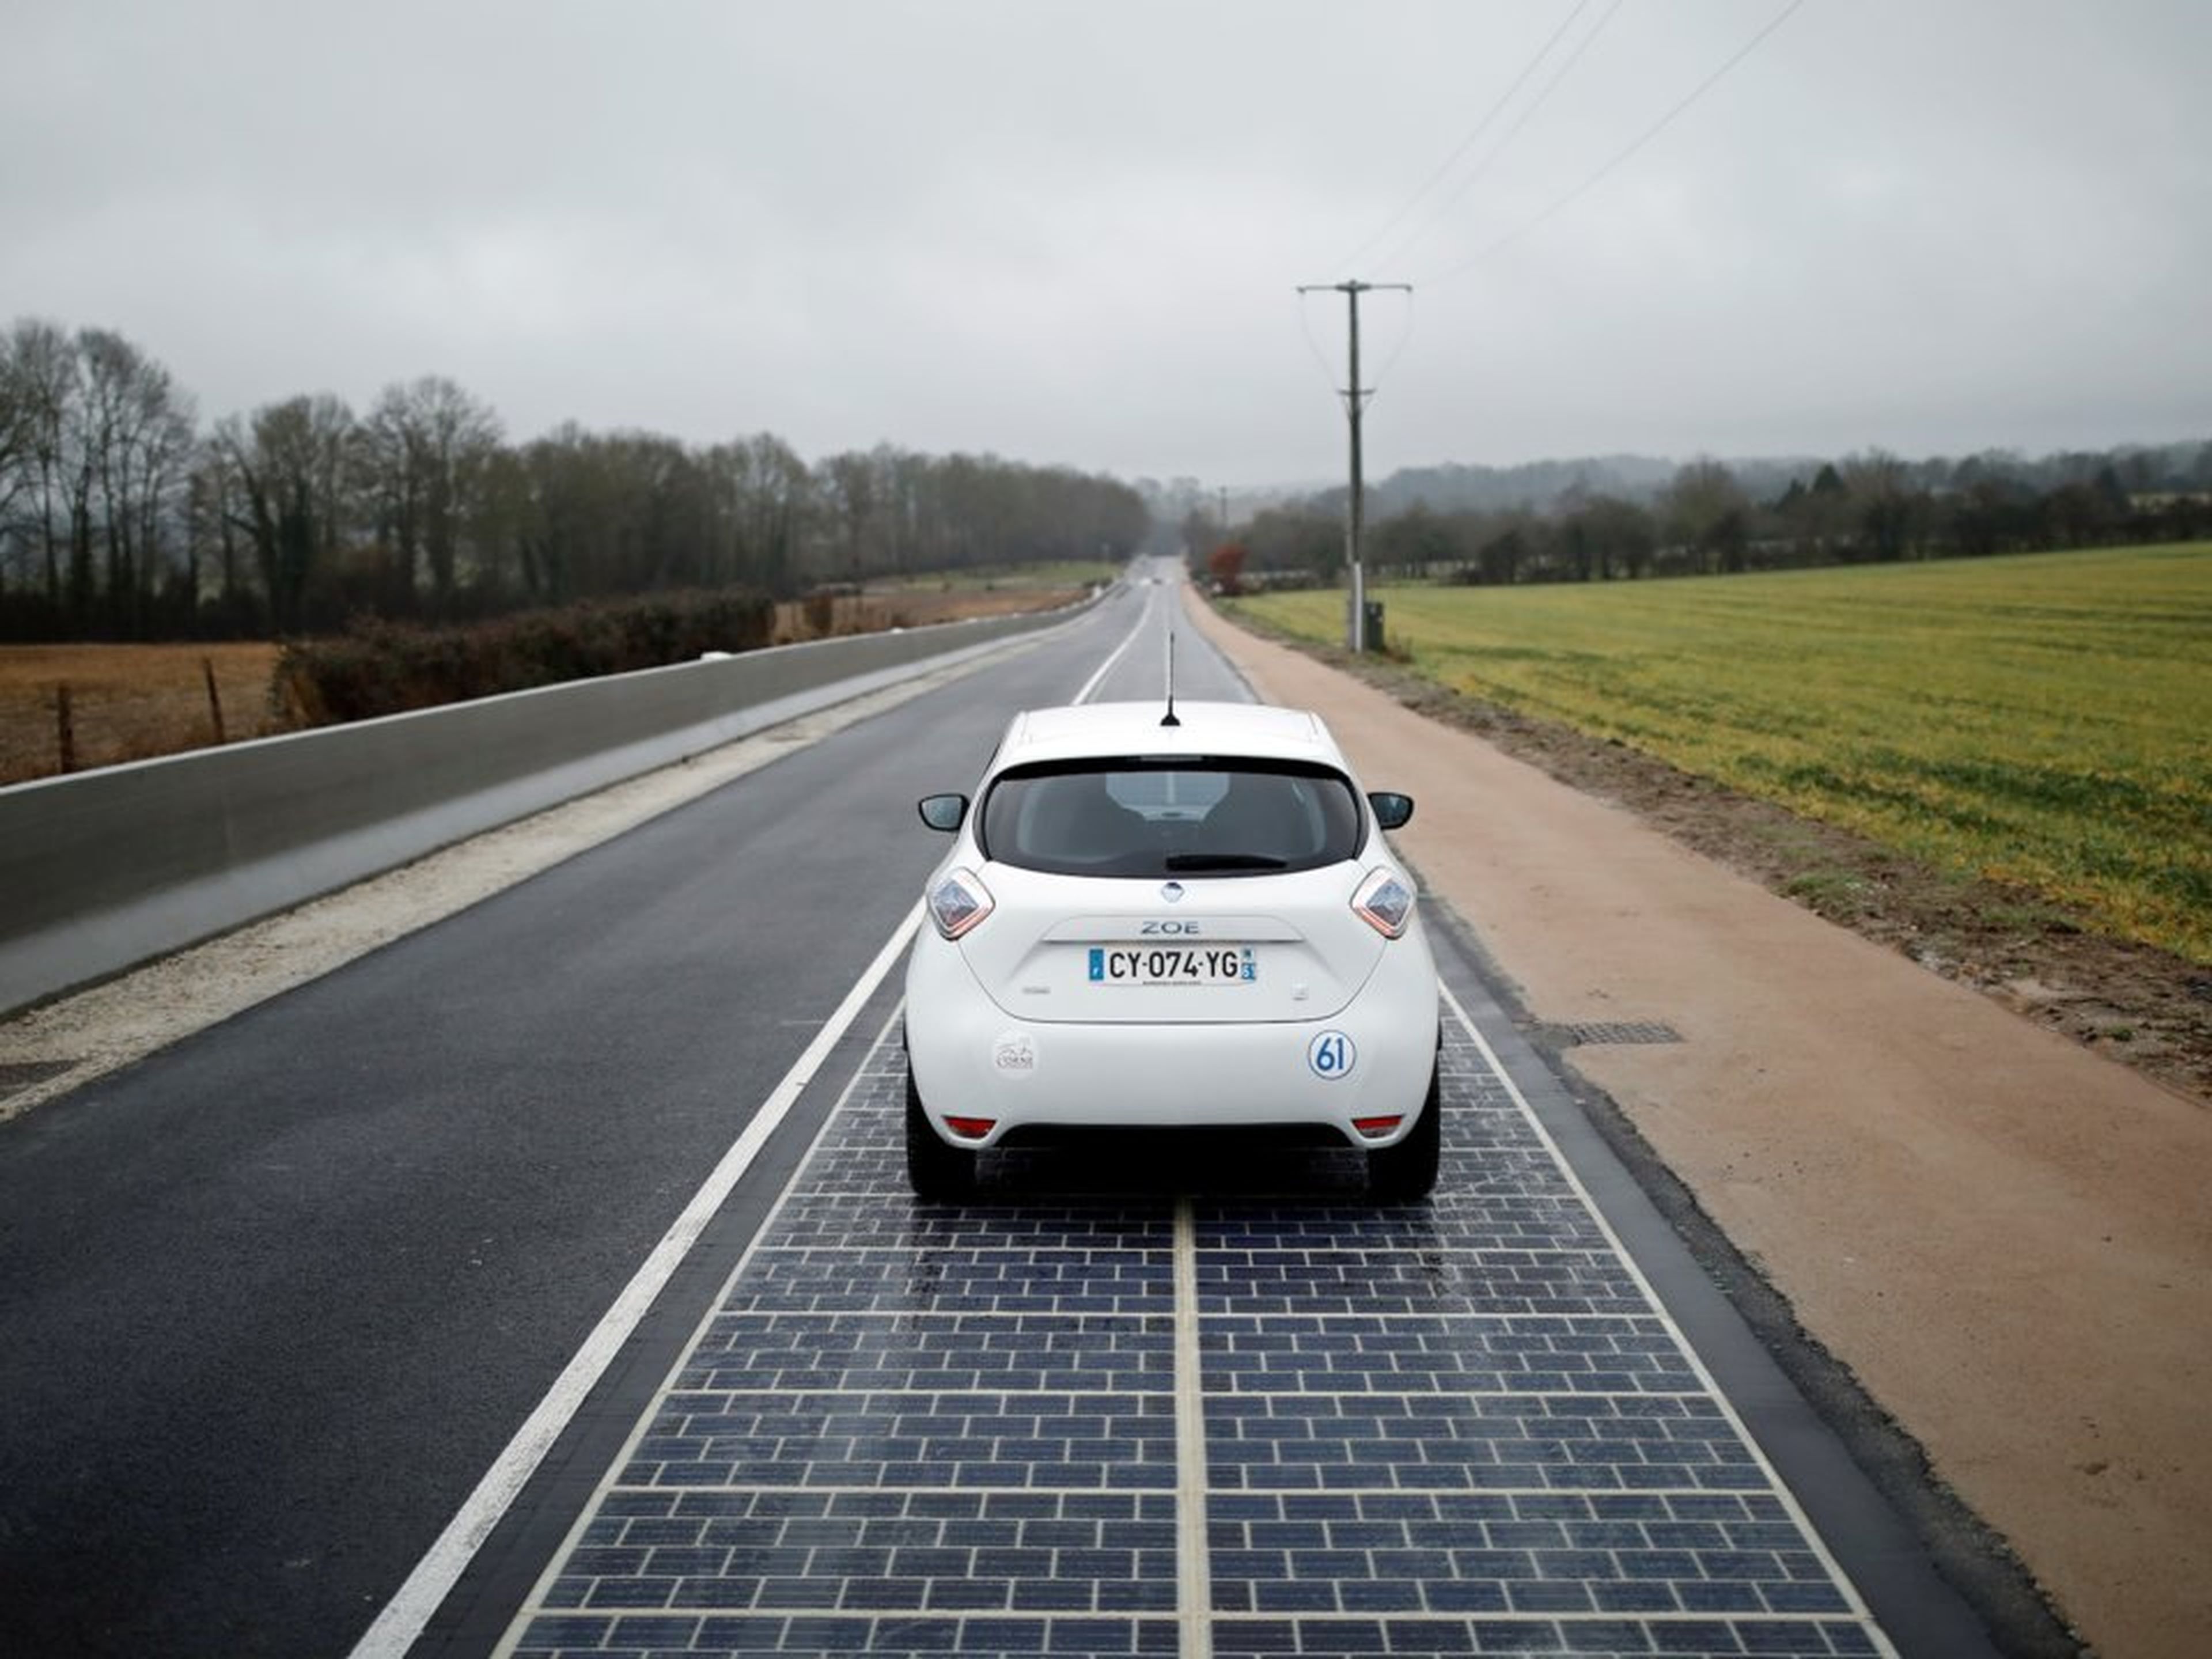 Un automóvil circula por la carretera de paneles solares.